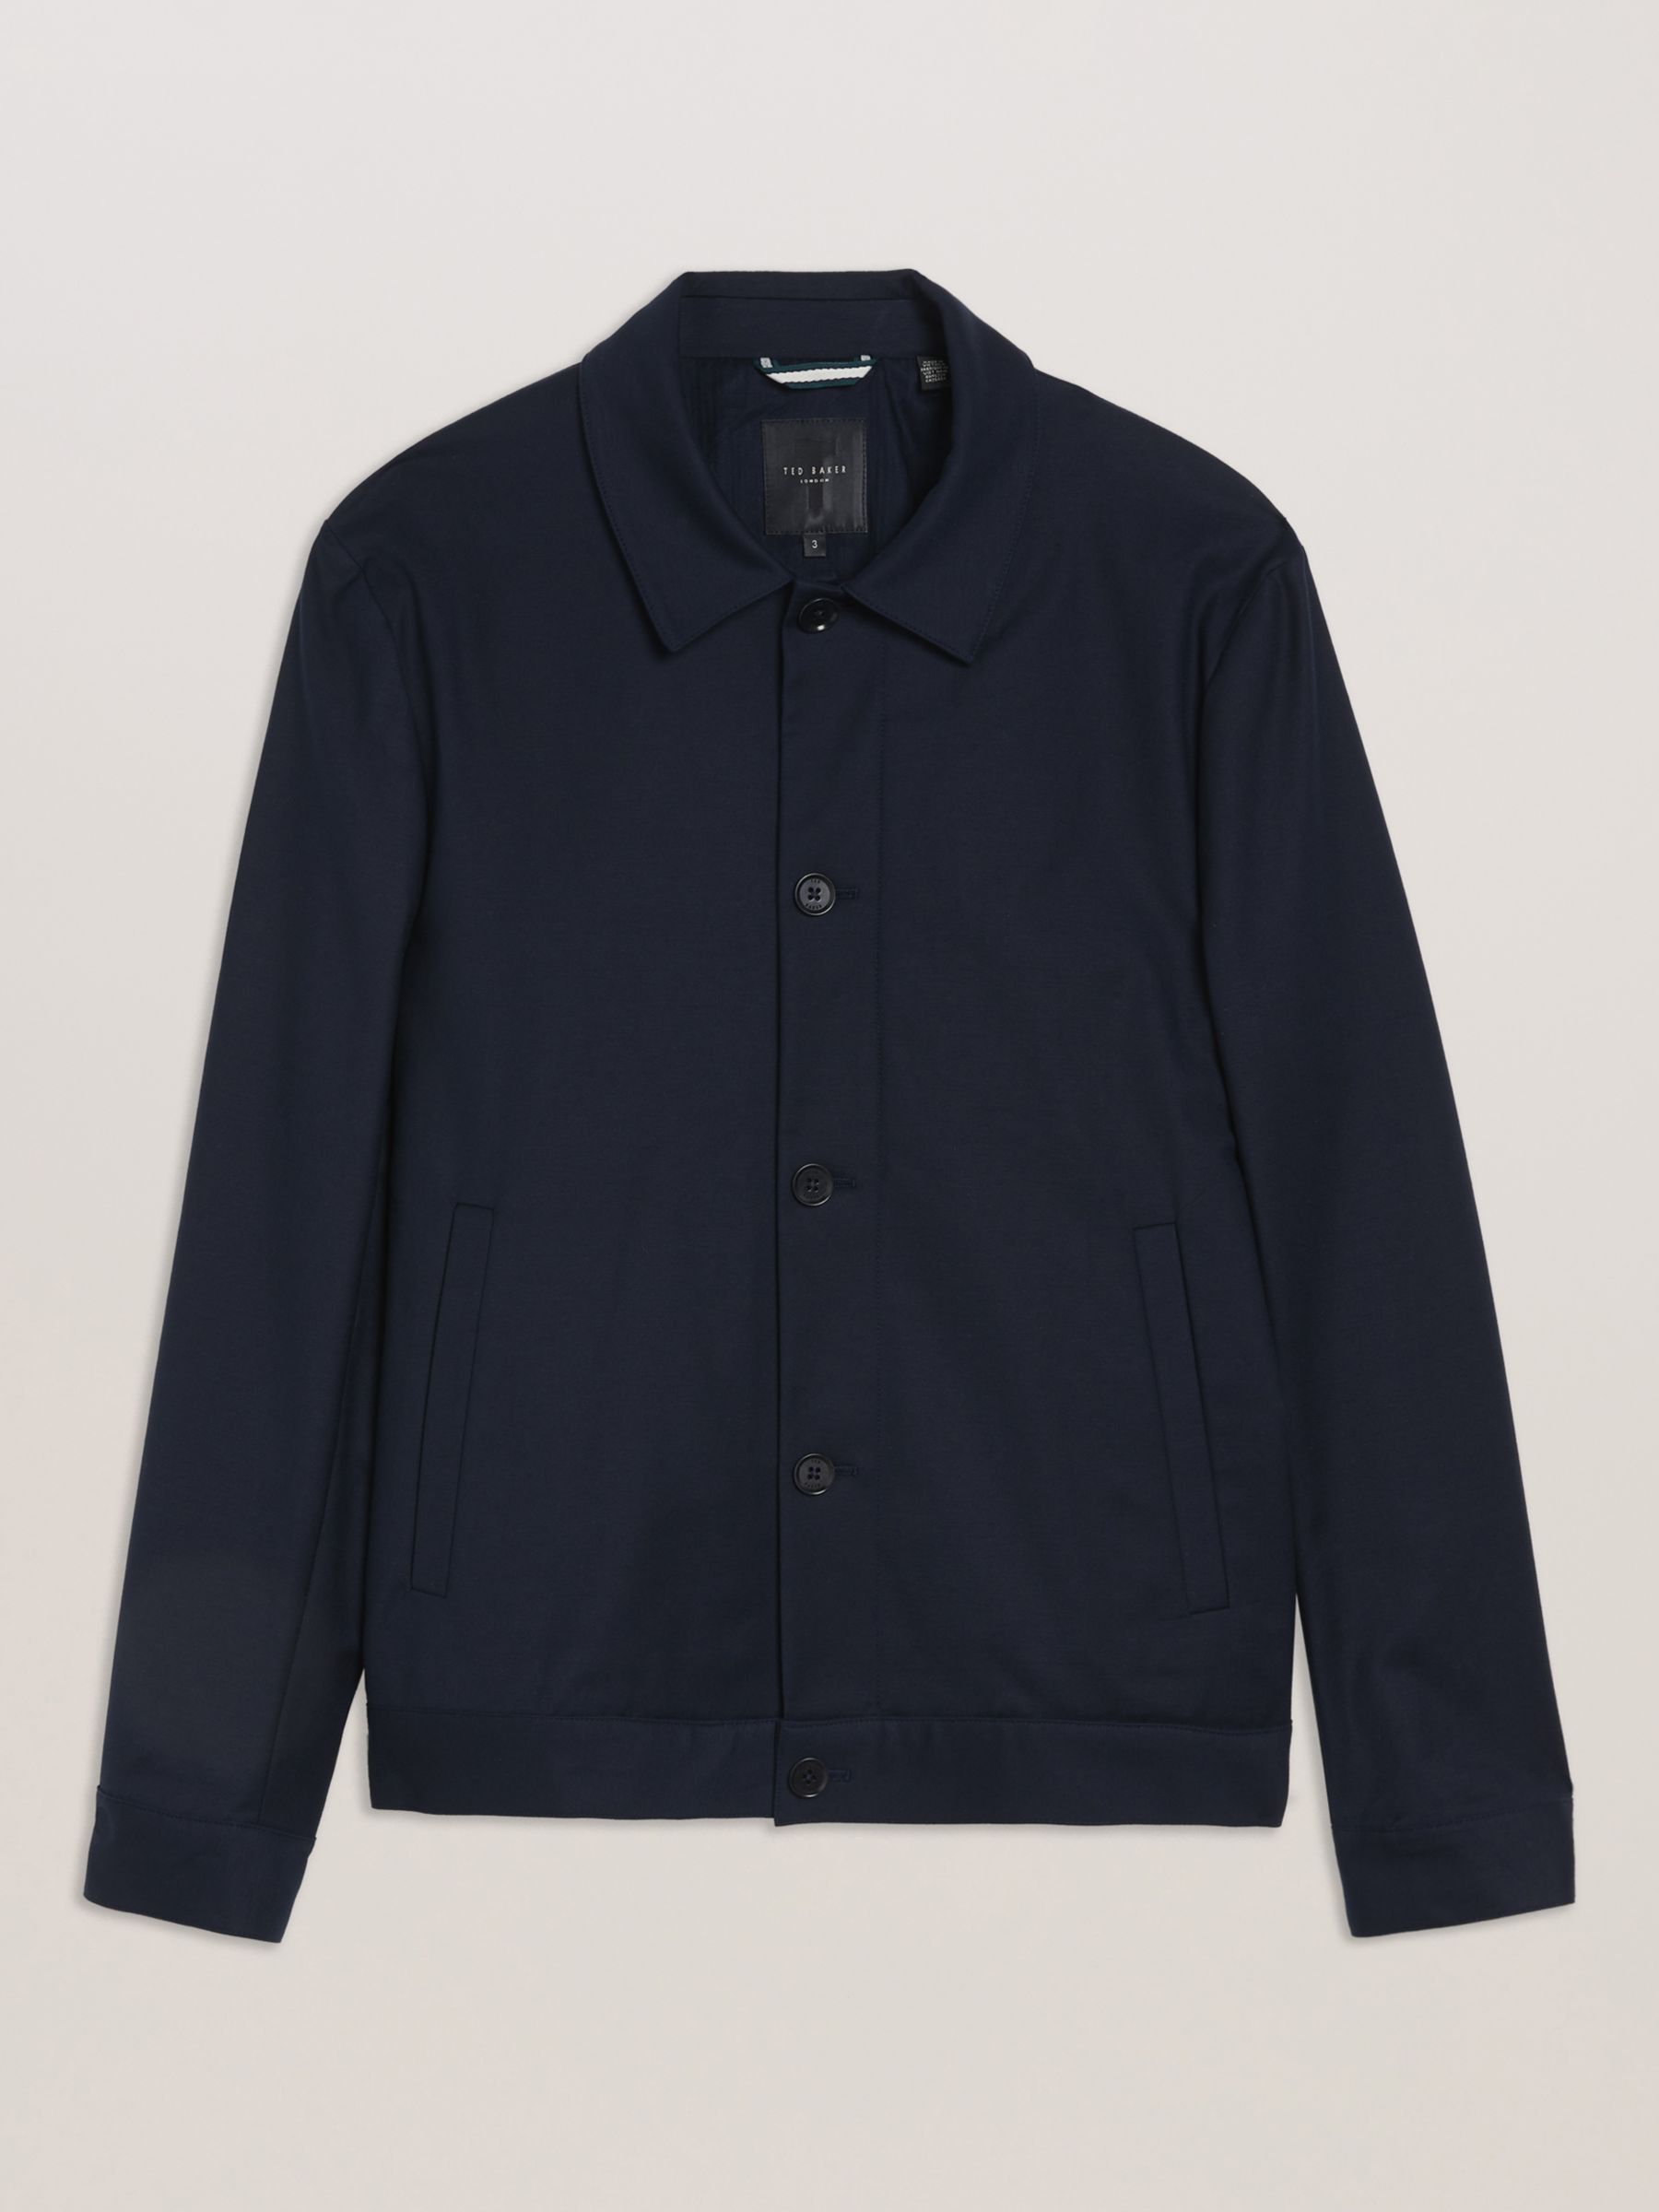 Ted Baker Felix Compact Cotton Chore Jacket, Navy, XXL